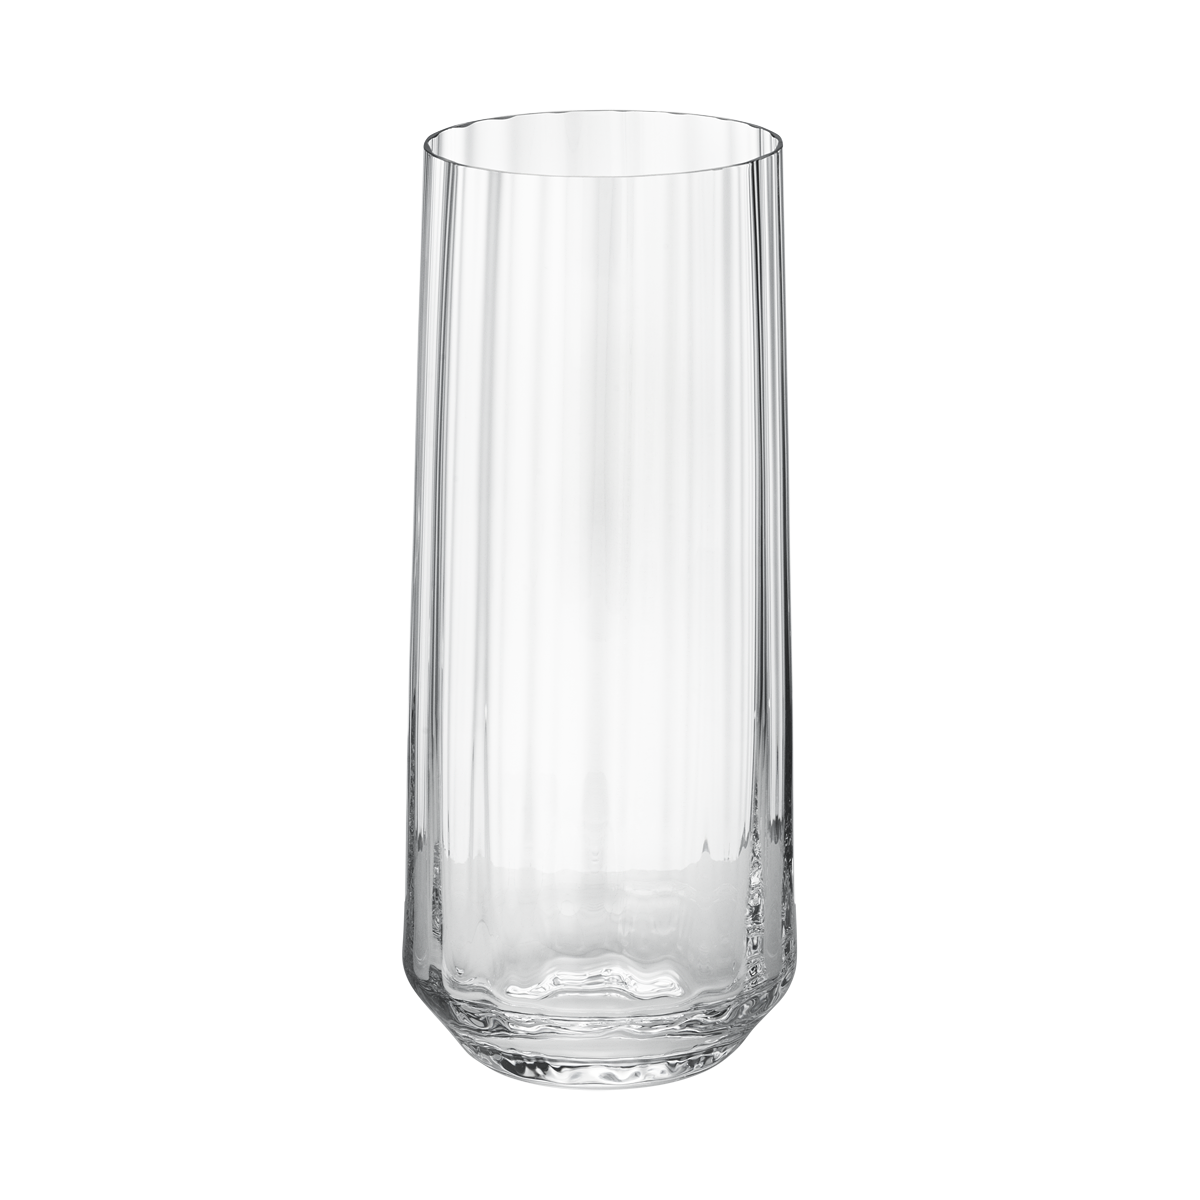 Georg Jensen BERNADOTTE Highball Glass 6pcs